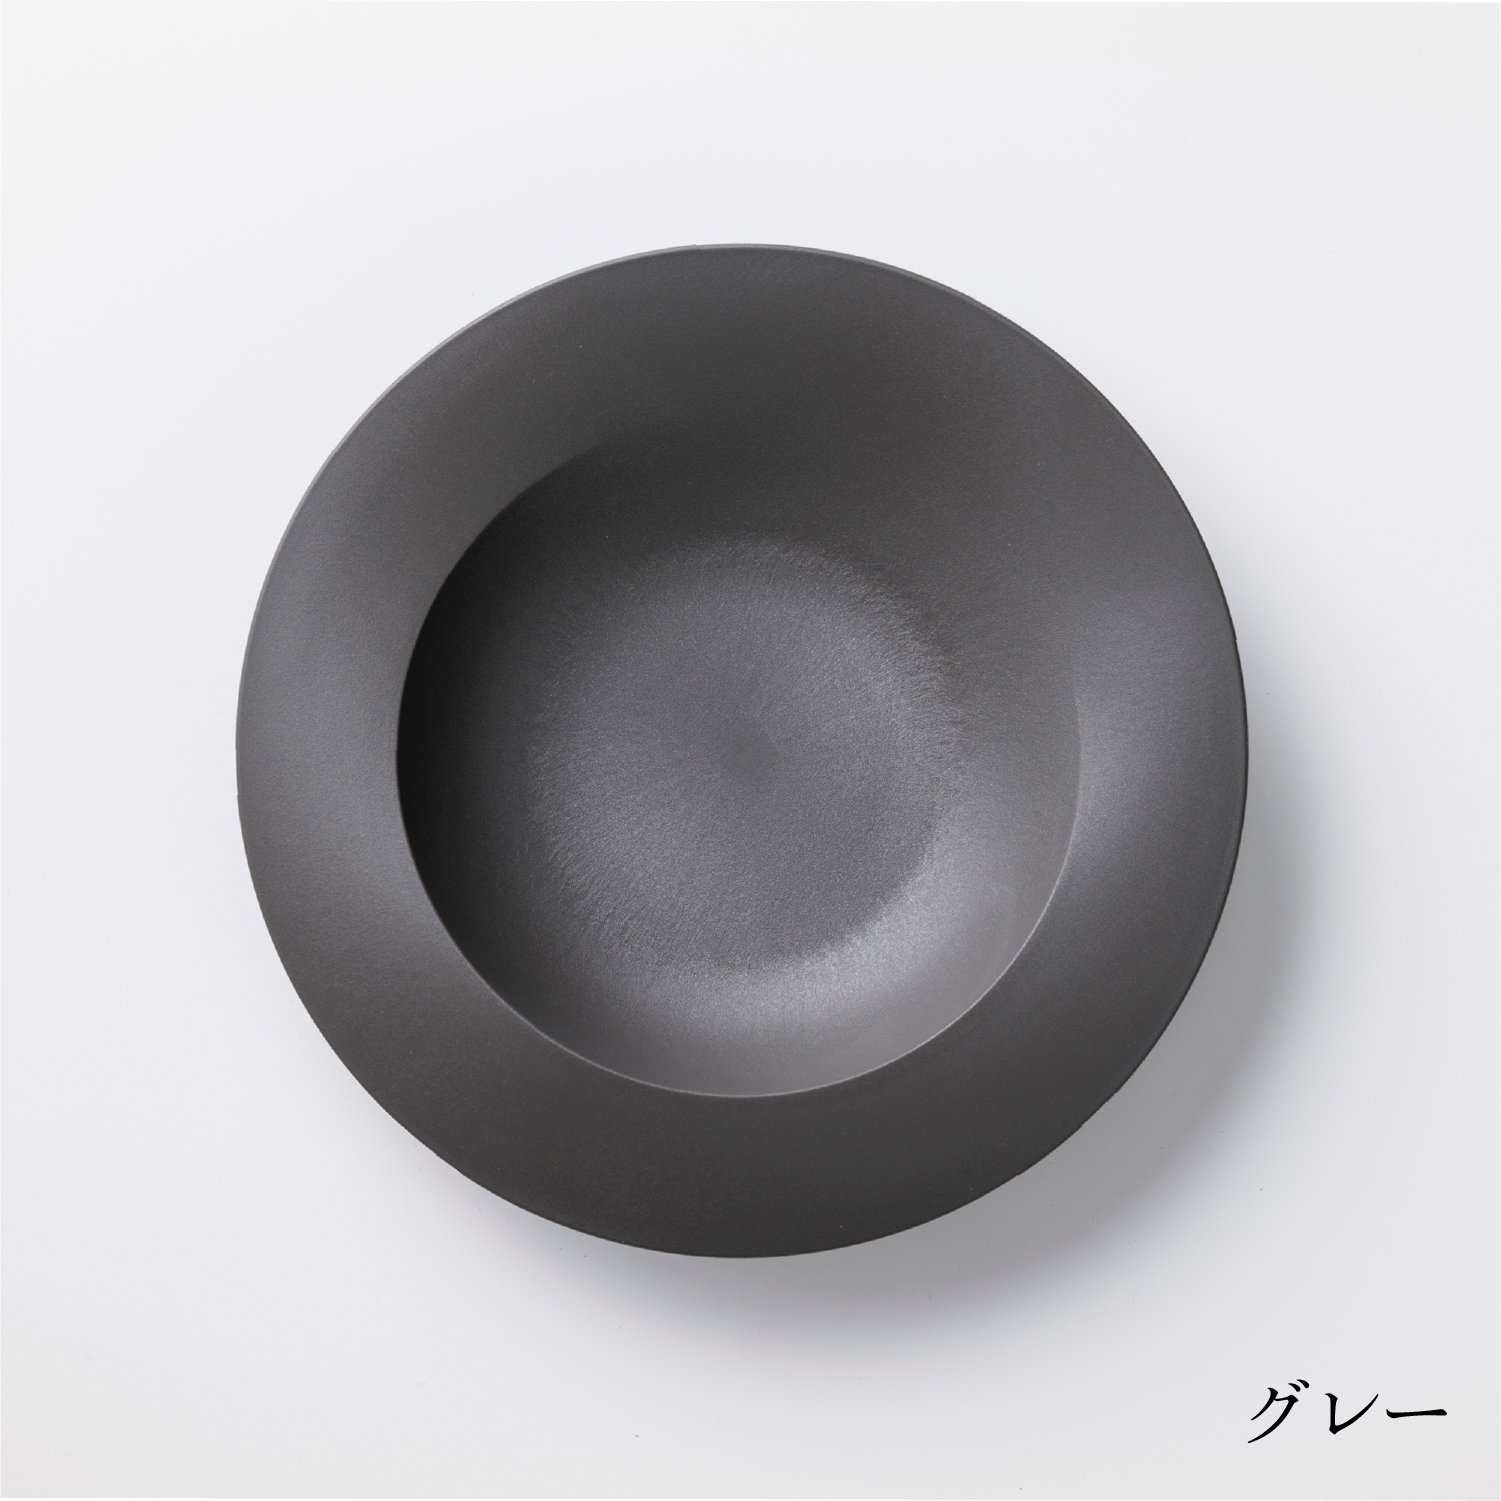 ARAS(エイラス) 深皿スクープの商品画像サムネ3 